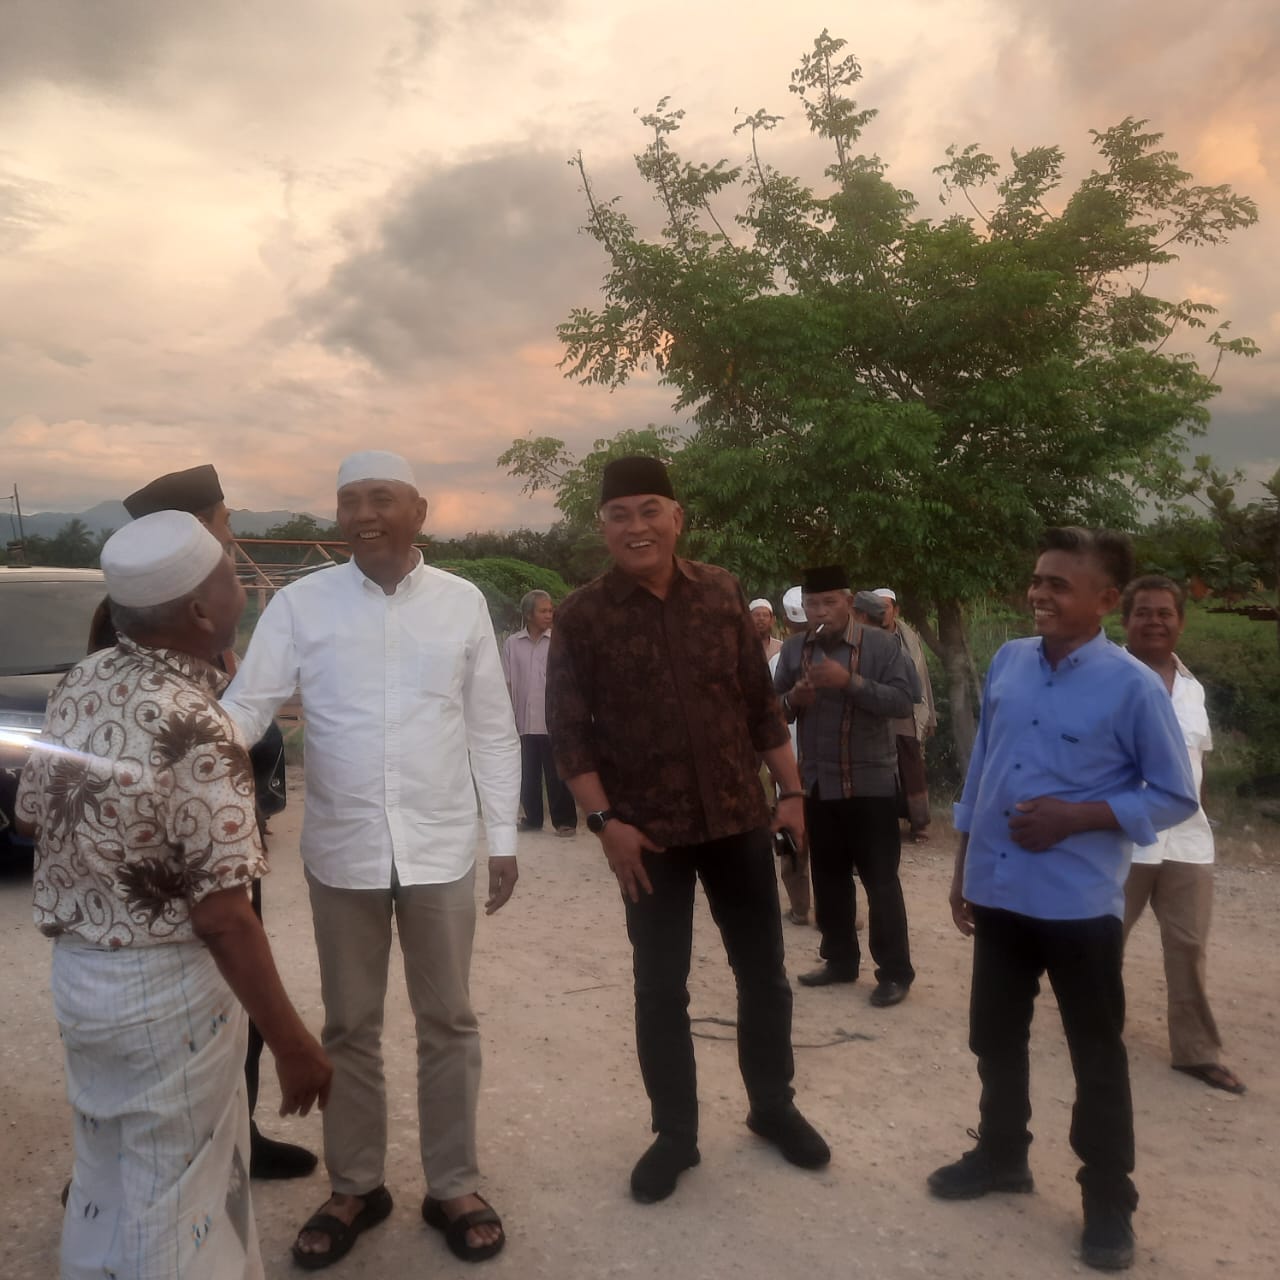 Teks foto beritasore/Irham Hagabean Nasution Masyarakat Madina sambut antusias kehadiran tiga cucu pendiri Ponpes Musthafawiyah Purbabaru.